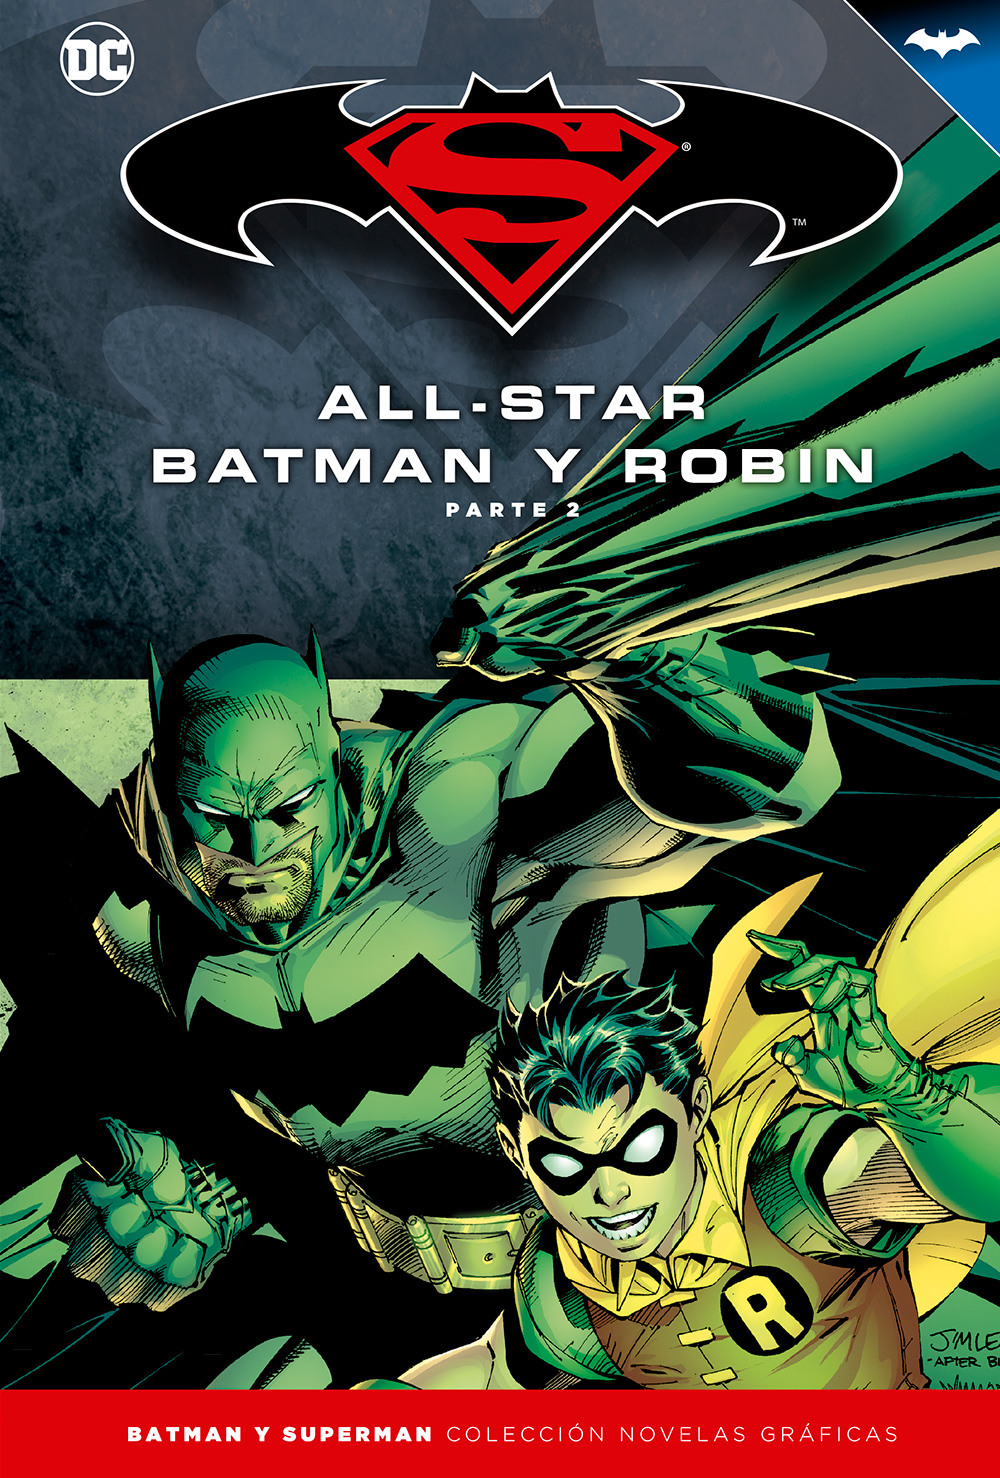 17 - [DC - Salvat] Batman y Superman: Colección Novelas Gráficas - Página 3 Portada_BMSM_3_AllStarBatman2